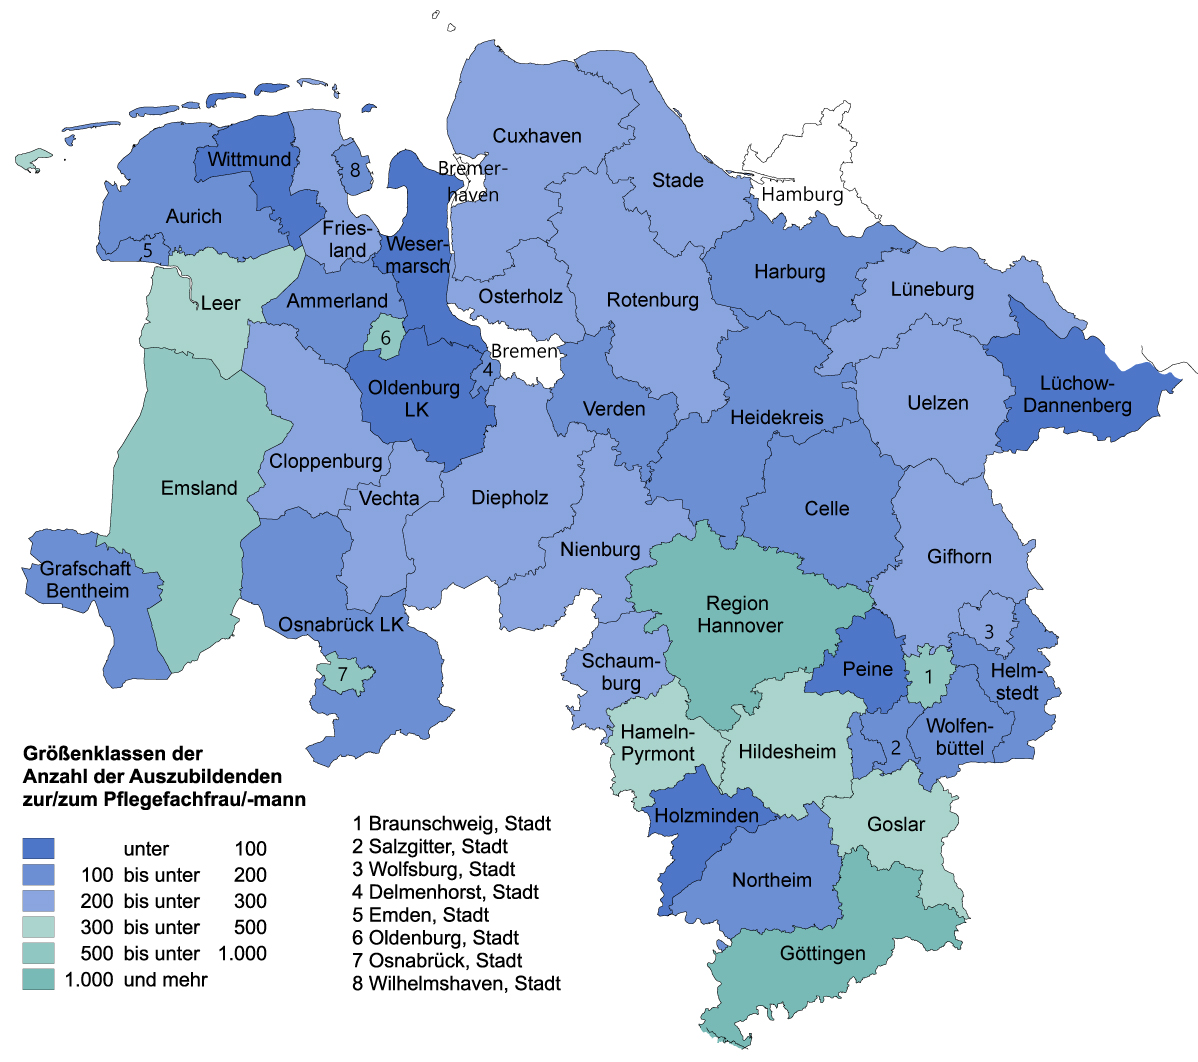 Die Karte zeigt die Anzahl der Auszubildenden zur/zum Pflegefachfrau/-mann je Landkreis bzw. kreisfreier Stadt in Größenklassen an. In den meisten Landkreisen liegt der Wert unter 300, der Durchschnitt in Niedersachsen liegt bei 310. Der Höchstwert liegt mit 2.310 in der Region Hannover, die niedrigsten Werte gibt es in den Kreisen Wittmund (39), Oldenburg (45) und Holzminden (45).